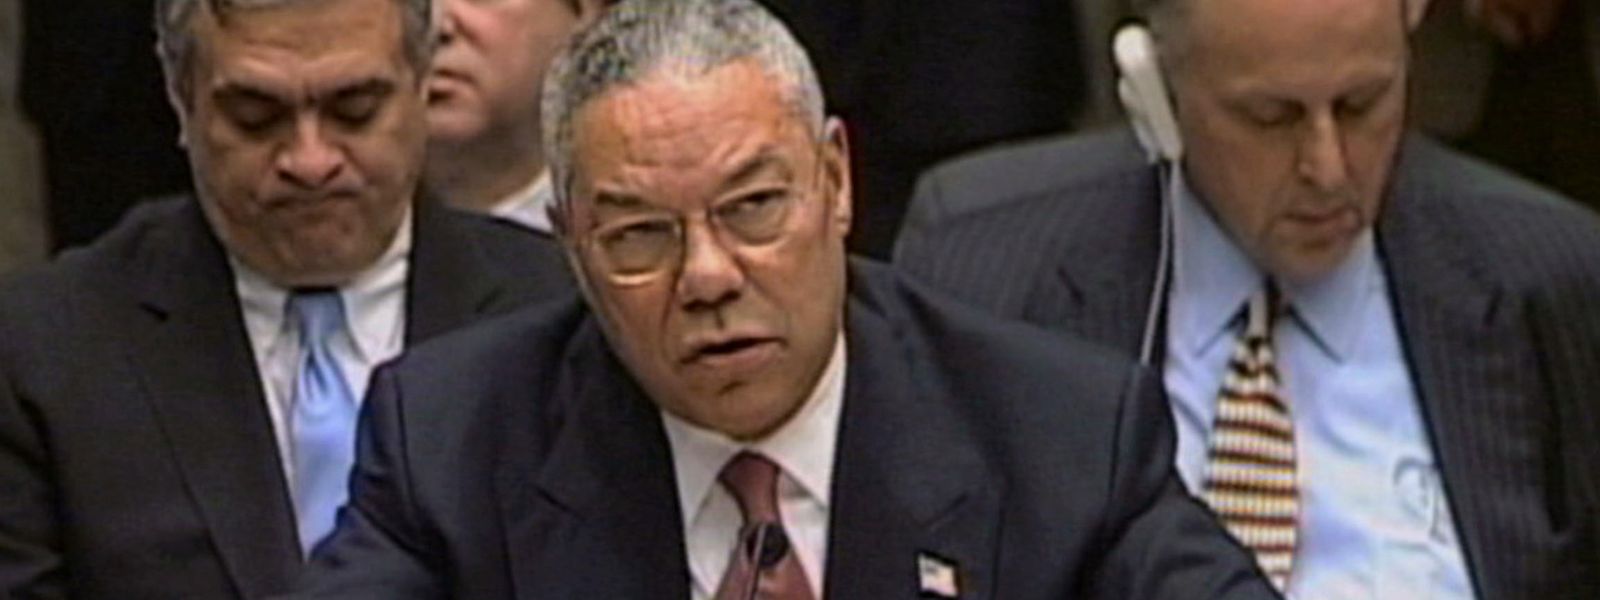 Der damalige US-Außenminister Colin Powell (Bildmitte) 2003 im UN-Sicherheitsrat. Er rechtfertigte die Invasion im Irak mit angeblichen Massenvernichtungswaffen in den Händen von Diktator Saddam Hussein.